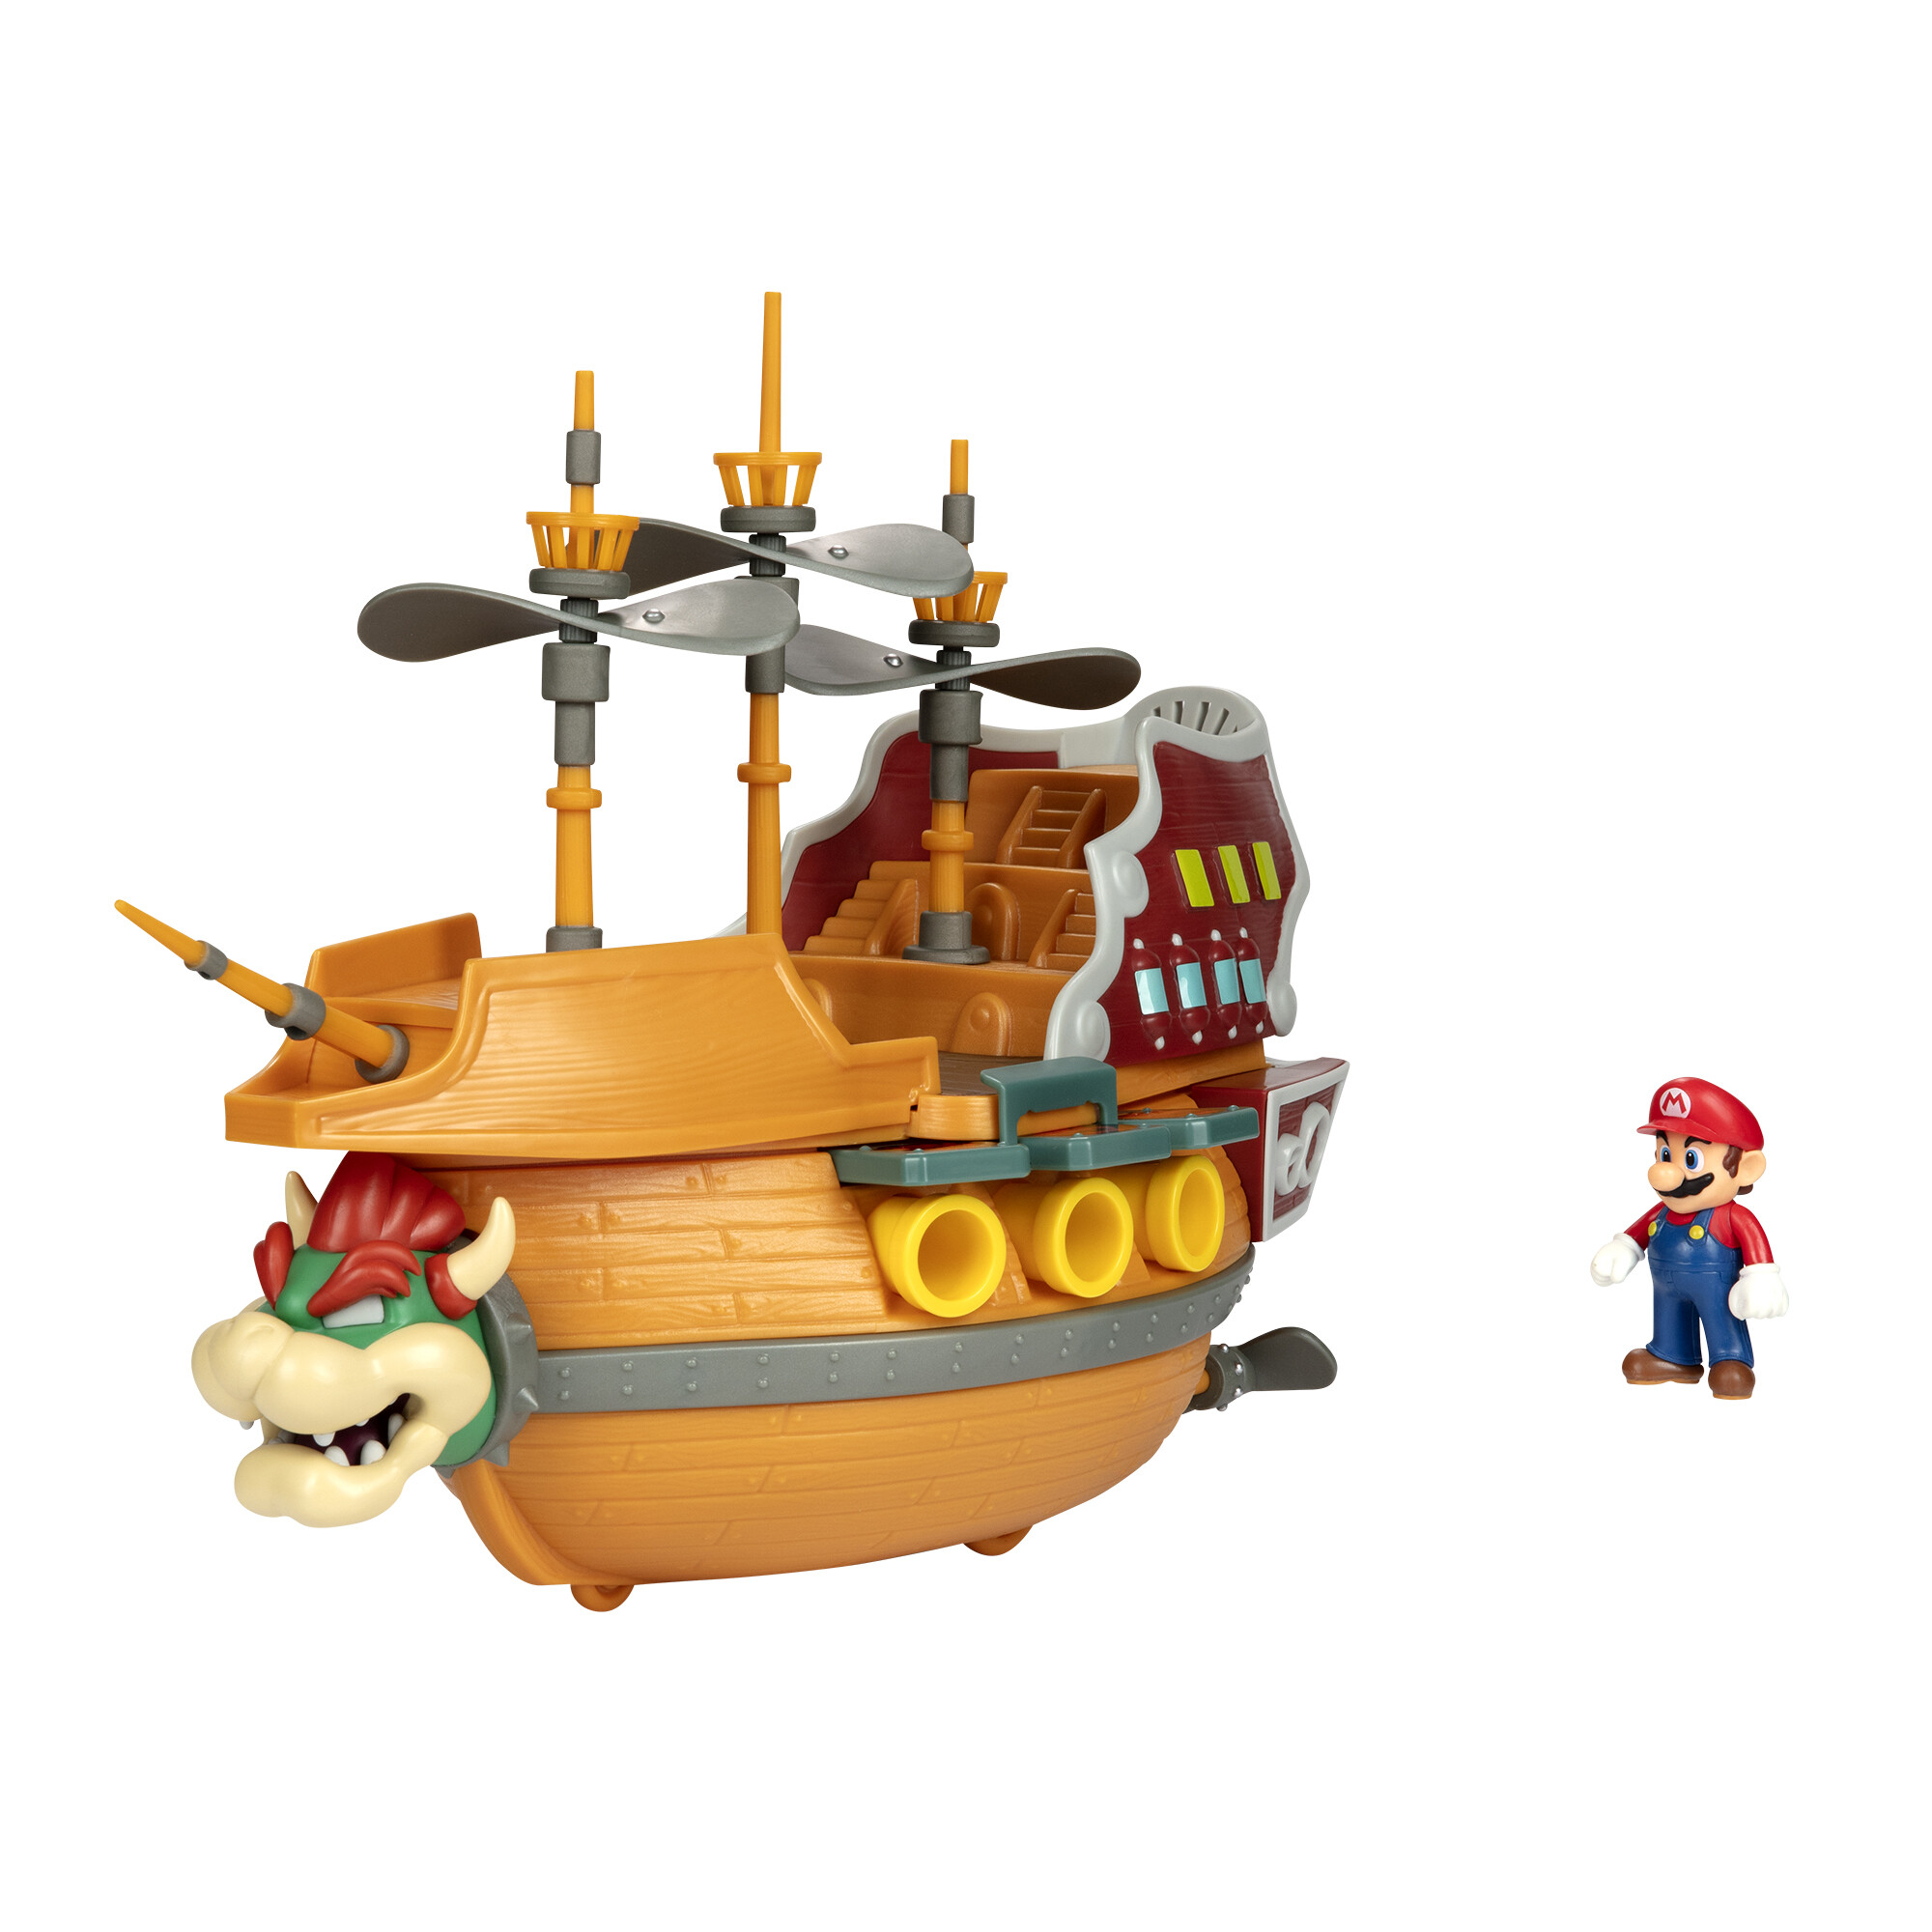 Super mario galeone volante di bowser con 5 personaggi articoati estremamente dettagliati - Super Mario